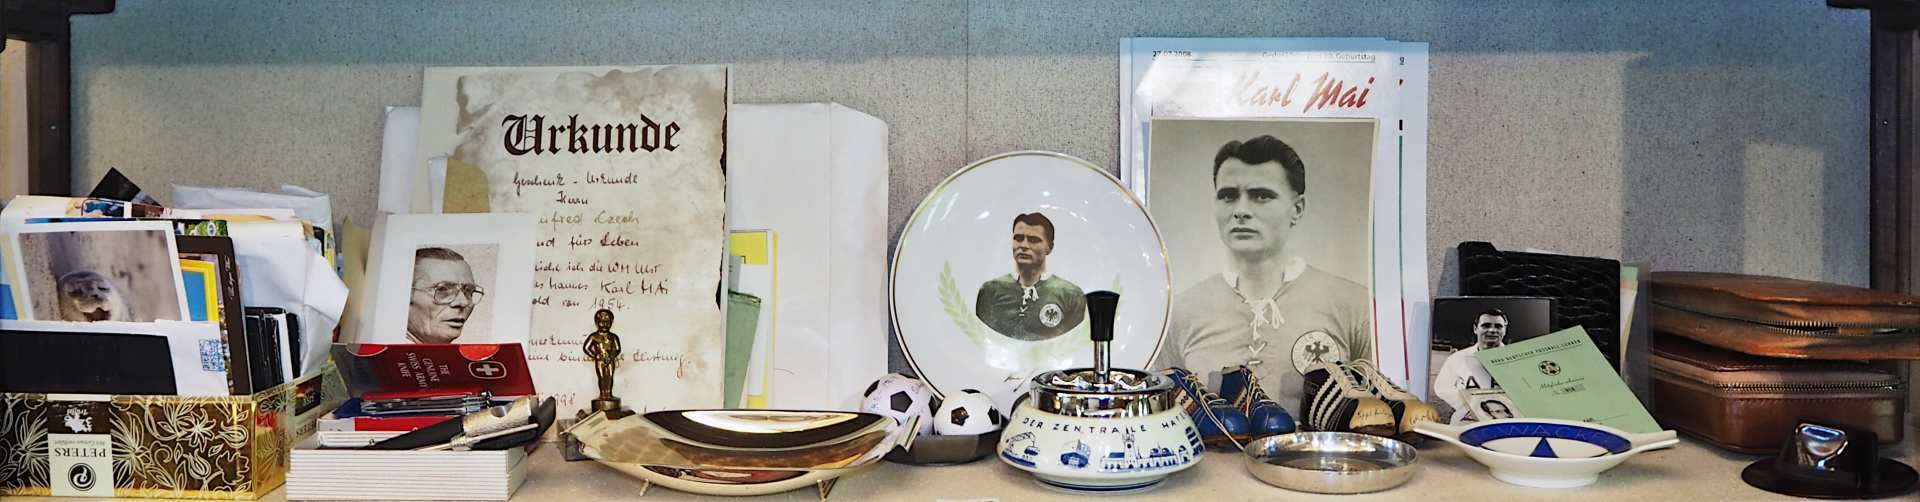 1 große Sammlung Fußball-/Memorabilia des Fußballspielers Karl "Charly" MAI (1928-1993): - Bild 2 aus 6